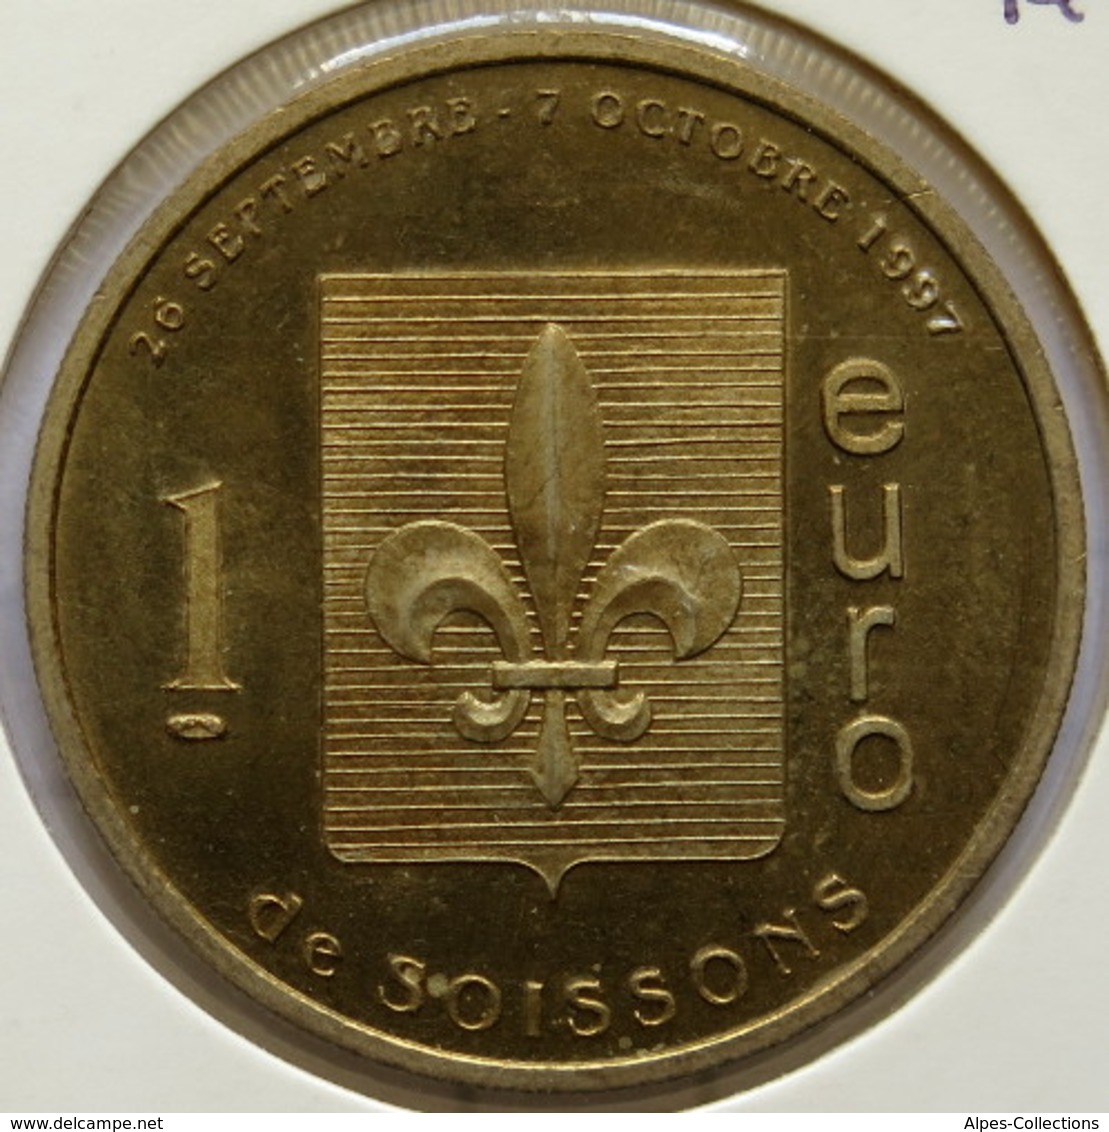 SOISSONS - EU0010.1 - 1 EURO DES VILLES - Réf: T391 - 1997 - Euros Des Villes